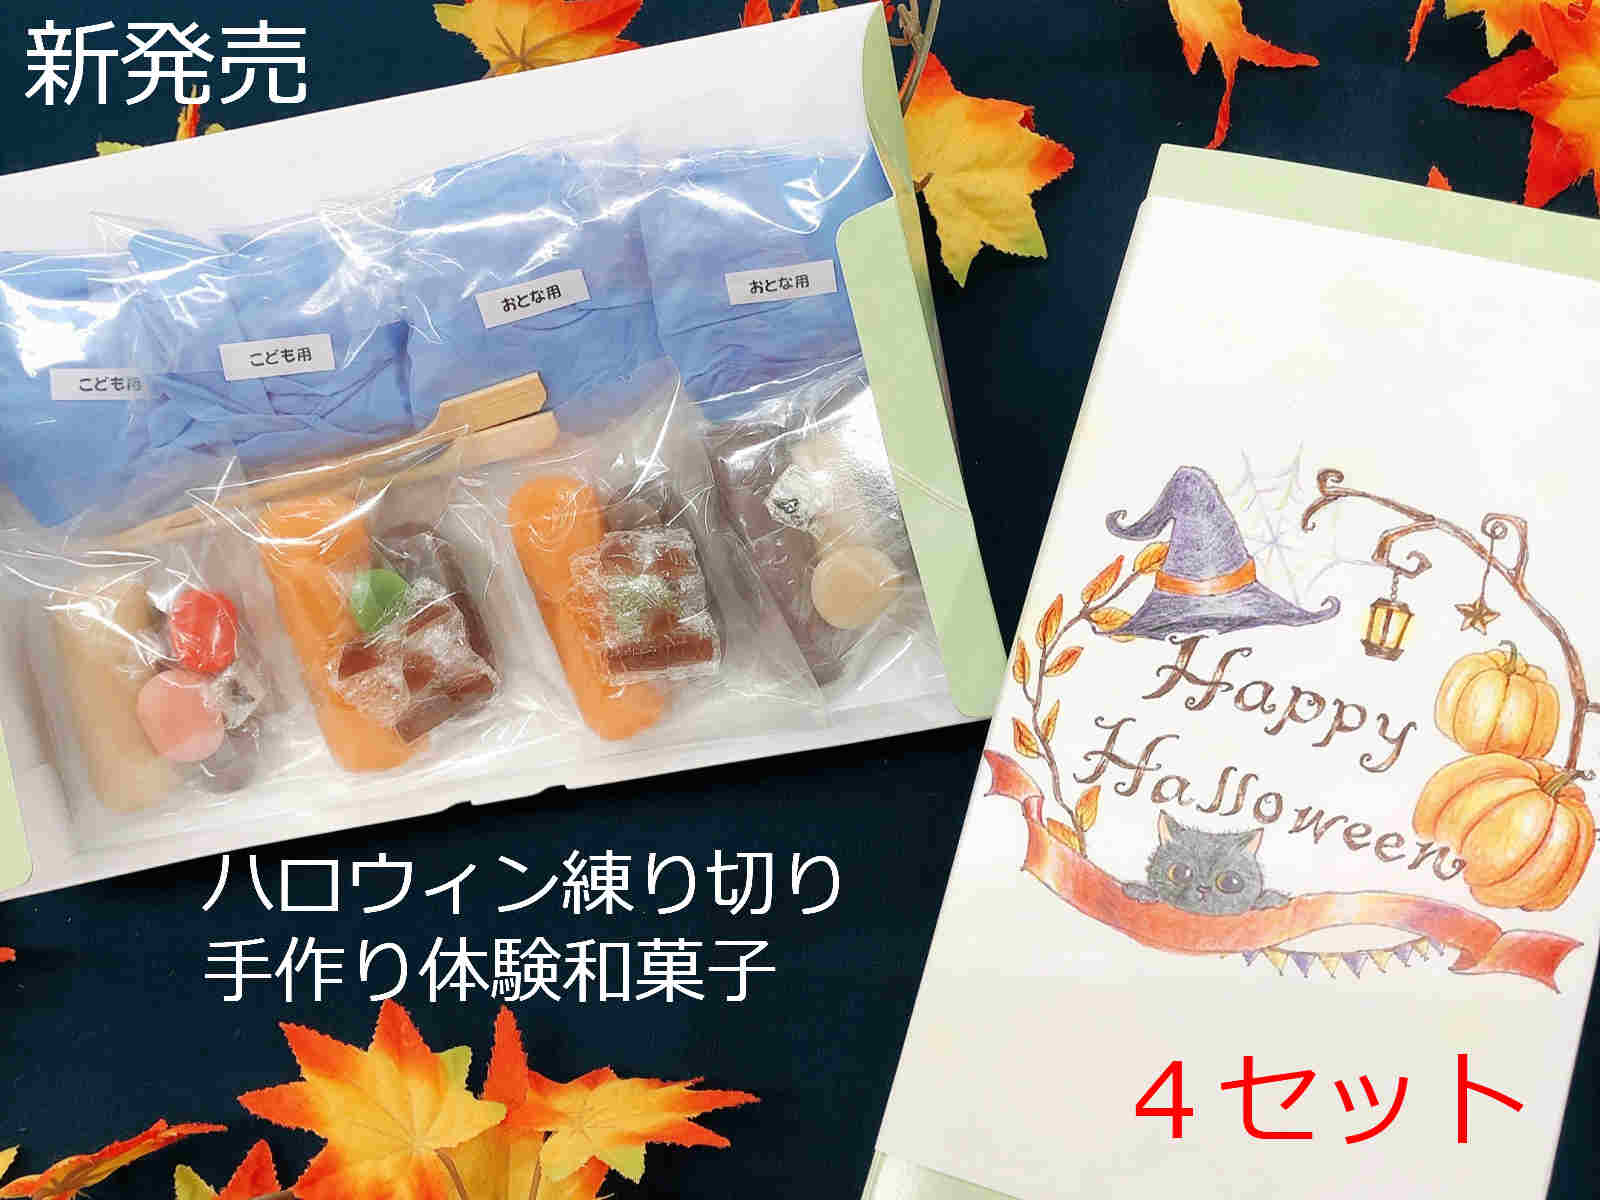 ハロウィン お菓子【ハロウィン 和菓子 体験 キット 4セッ